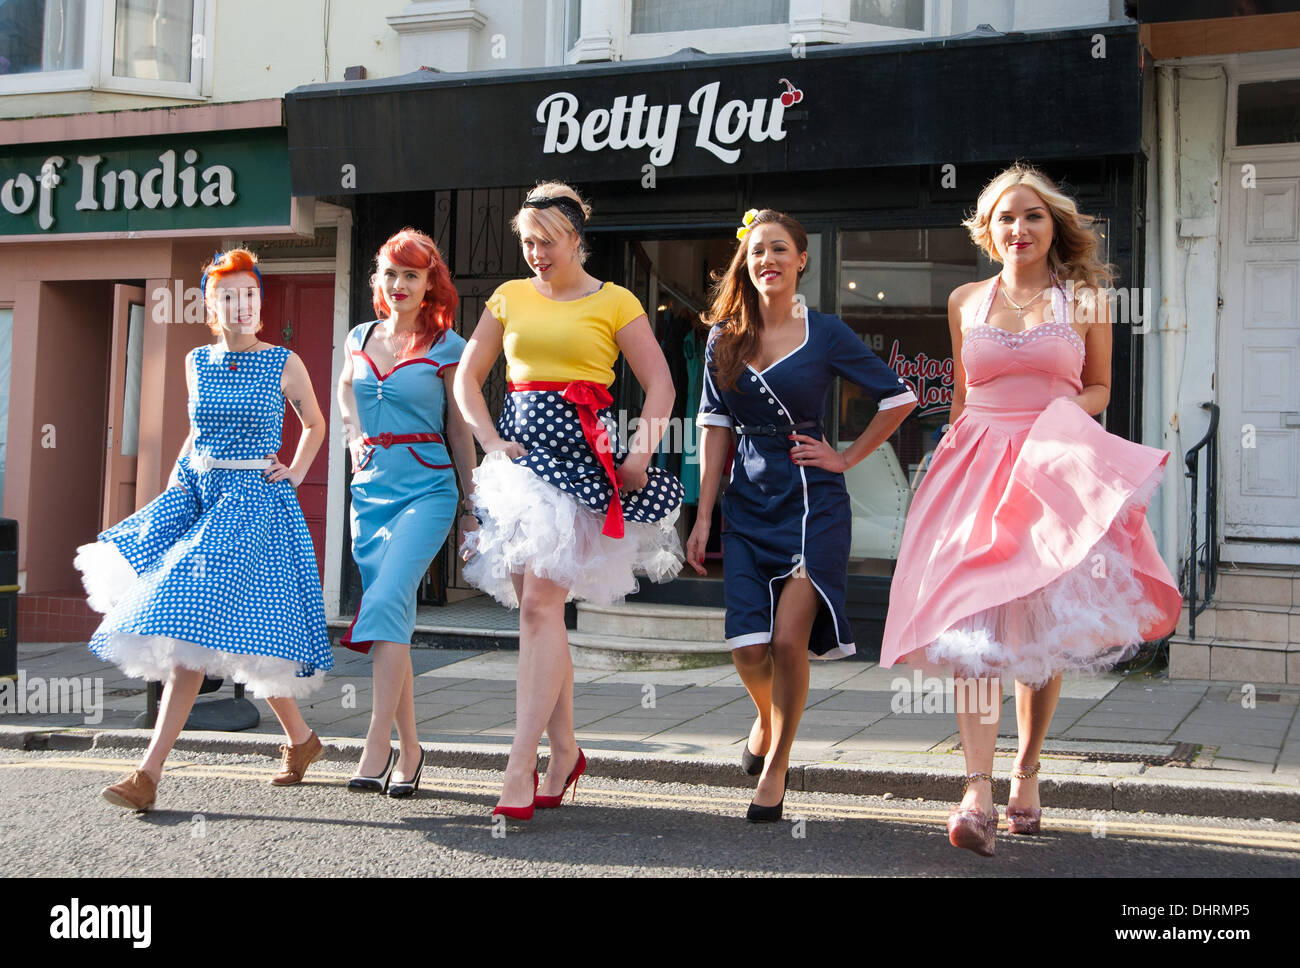 Junge Frauen Der er Jahre Von Betty Lou Vintage Salon In Brighton Tragen Mode Im Stil Der 1950er Jahre Stockfotografie Alamy